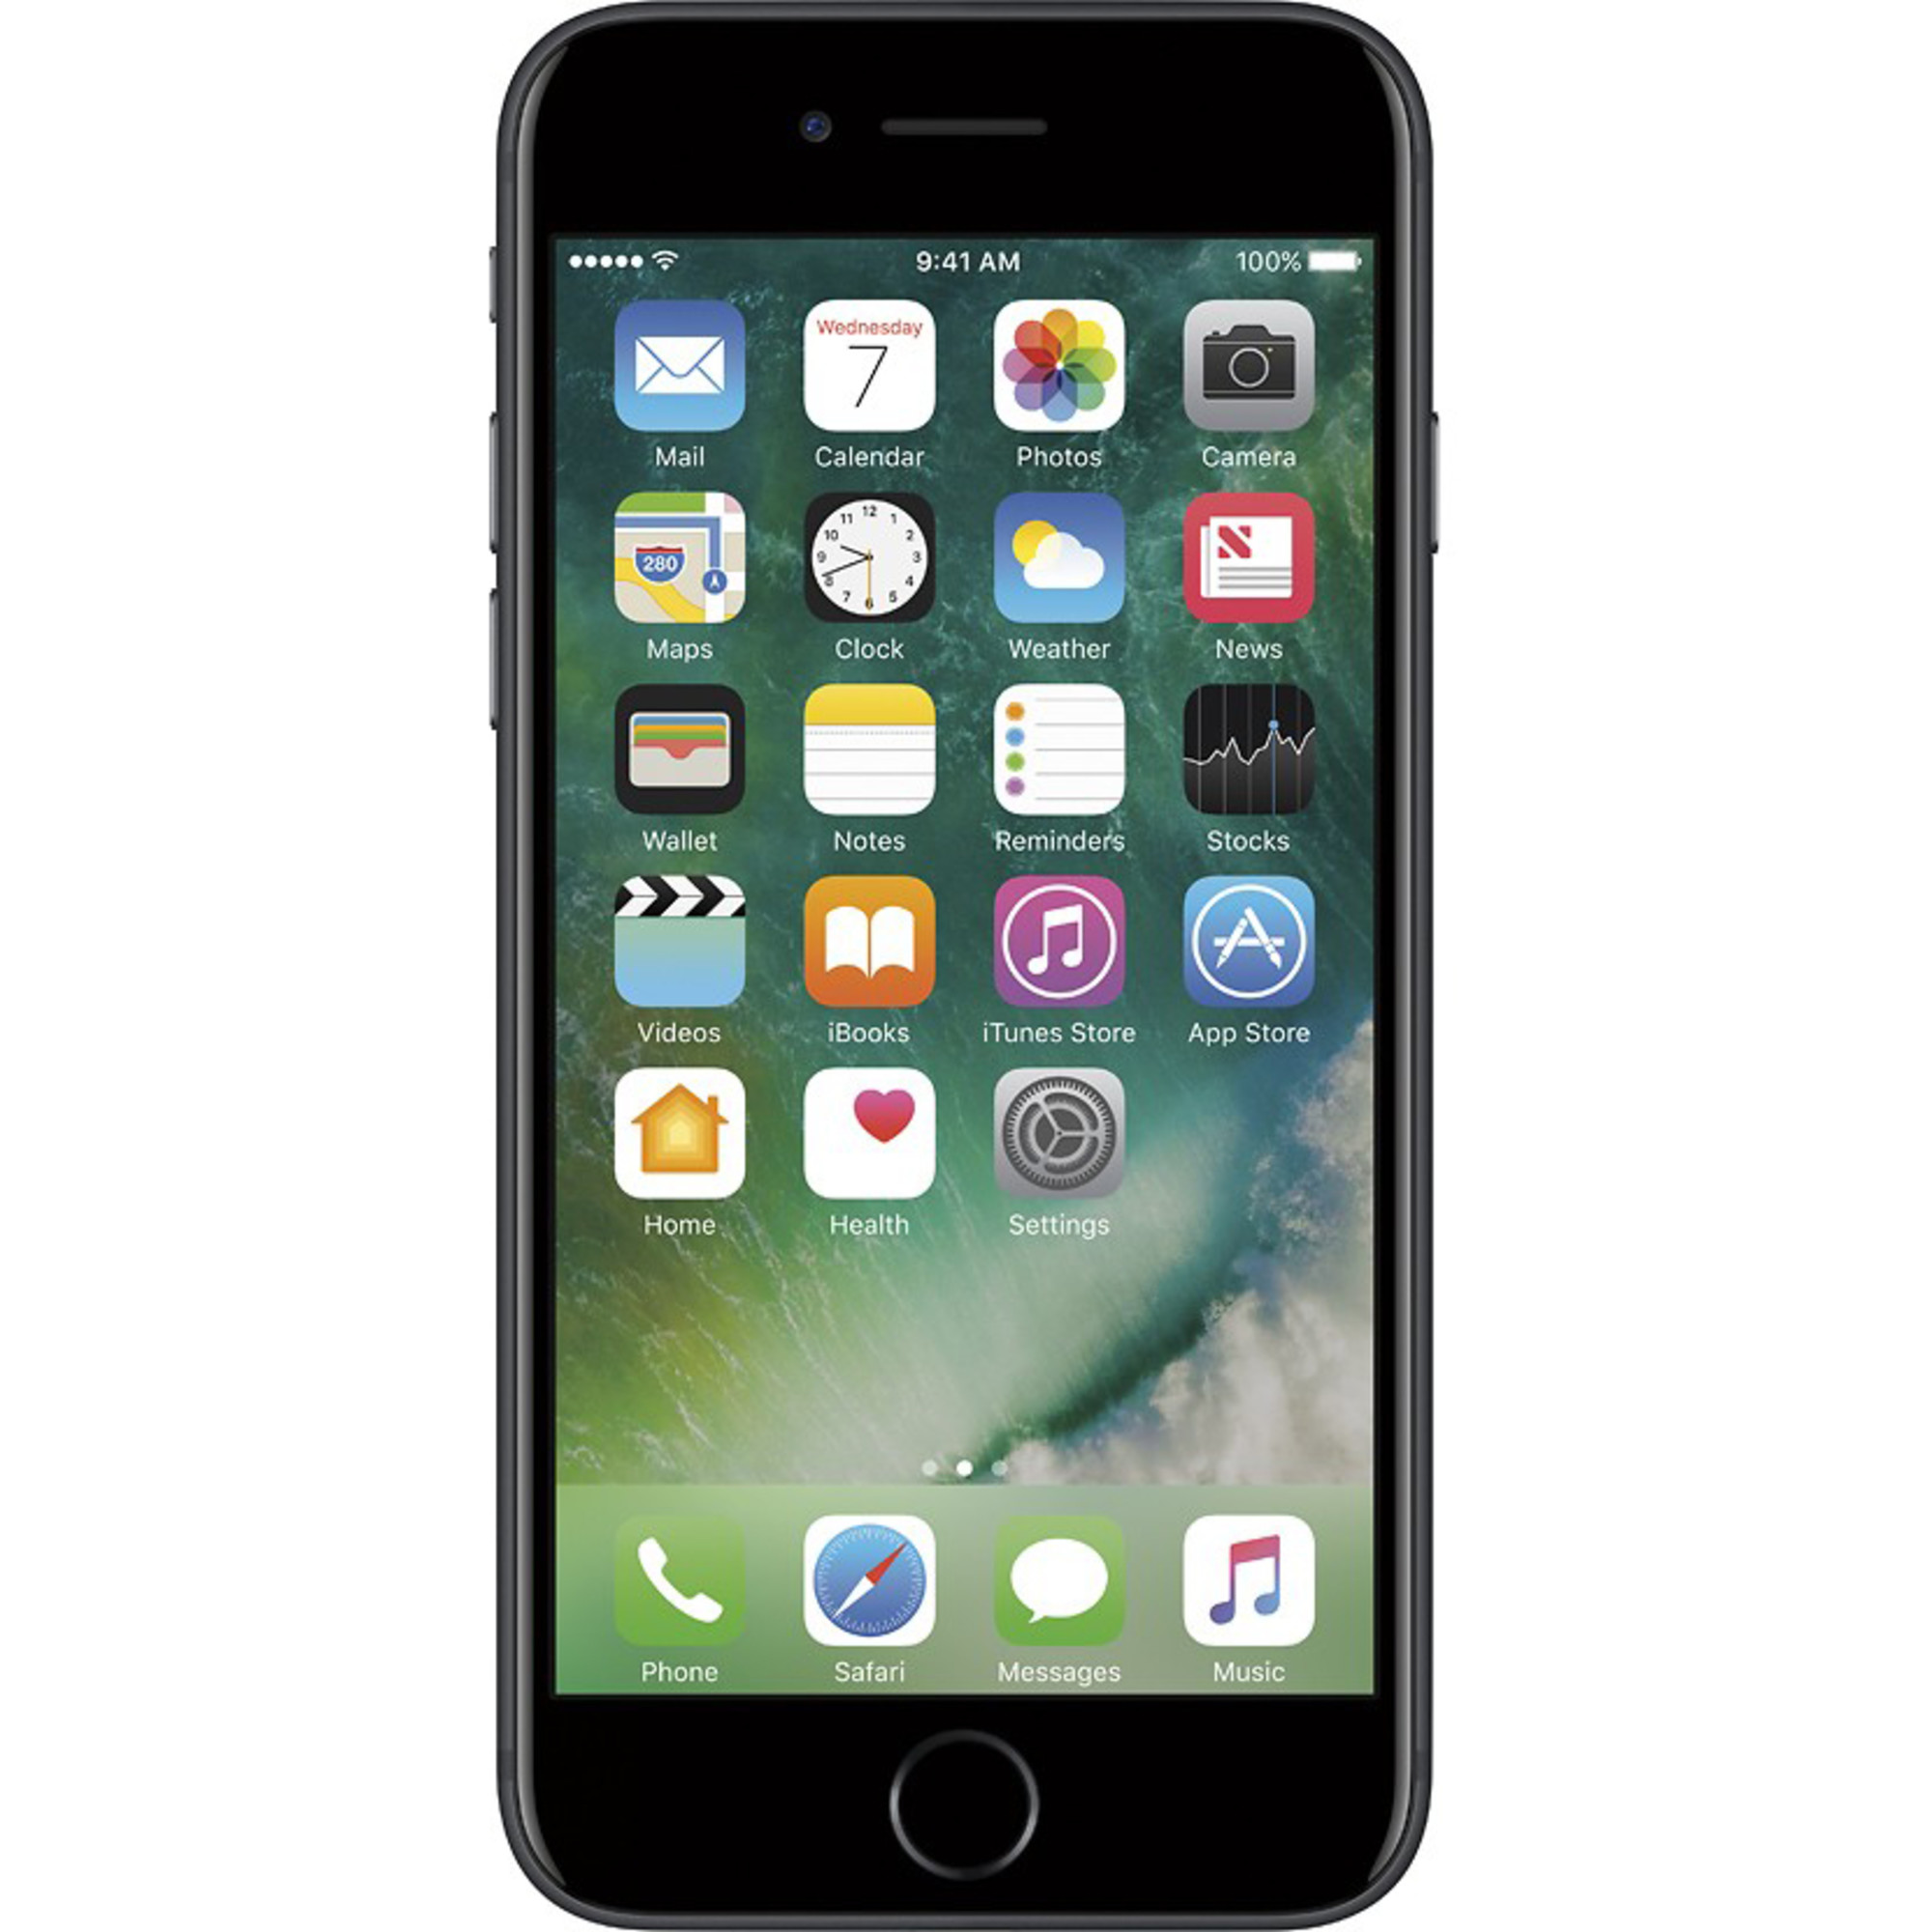 Apple iPhone 7 32GB Fully Unlocked (Verizon + Sprint + GSM Unlocked) - Black (Used) - image 1 of 3